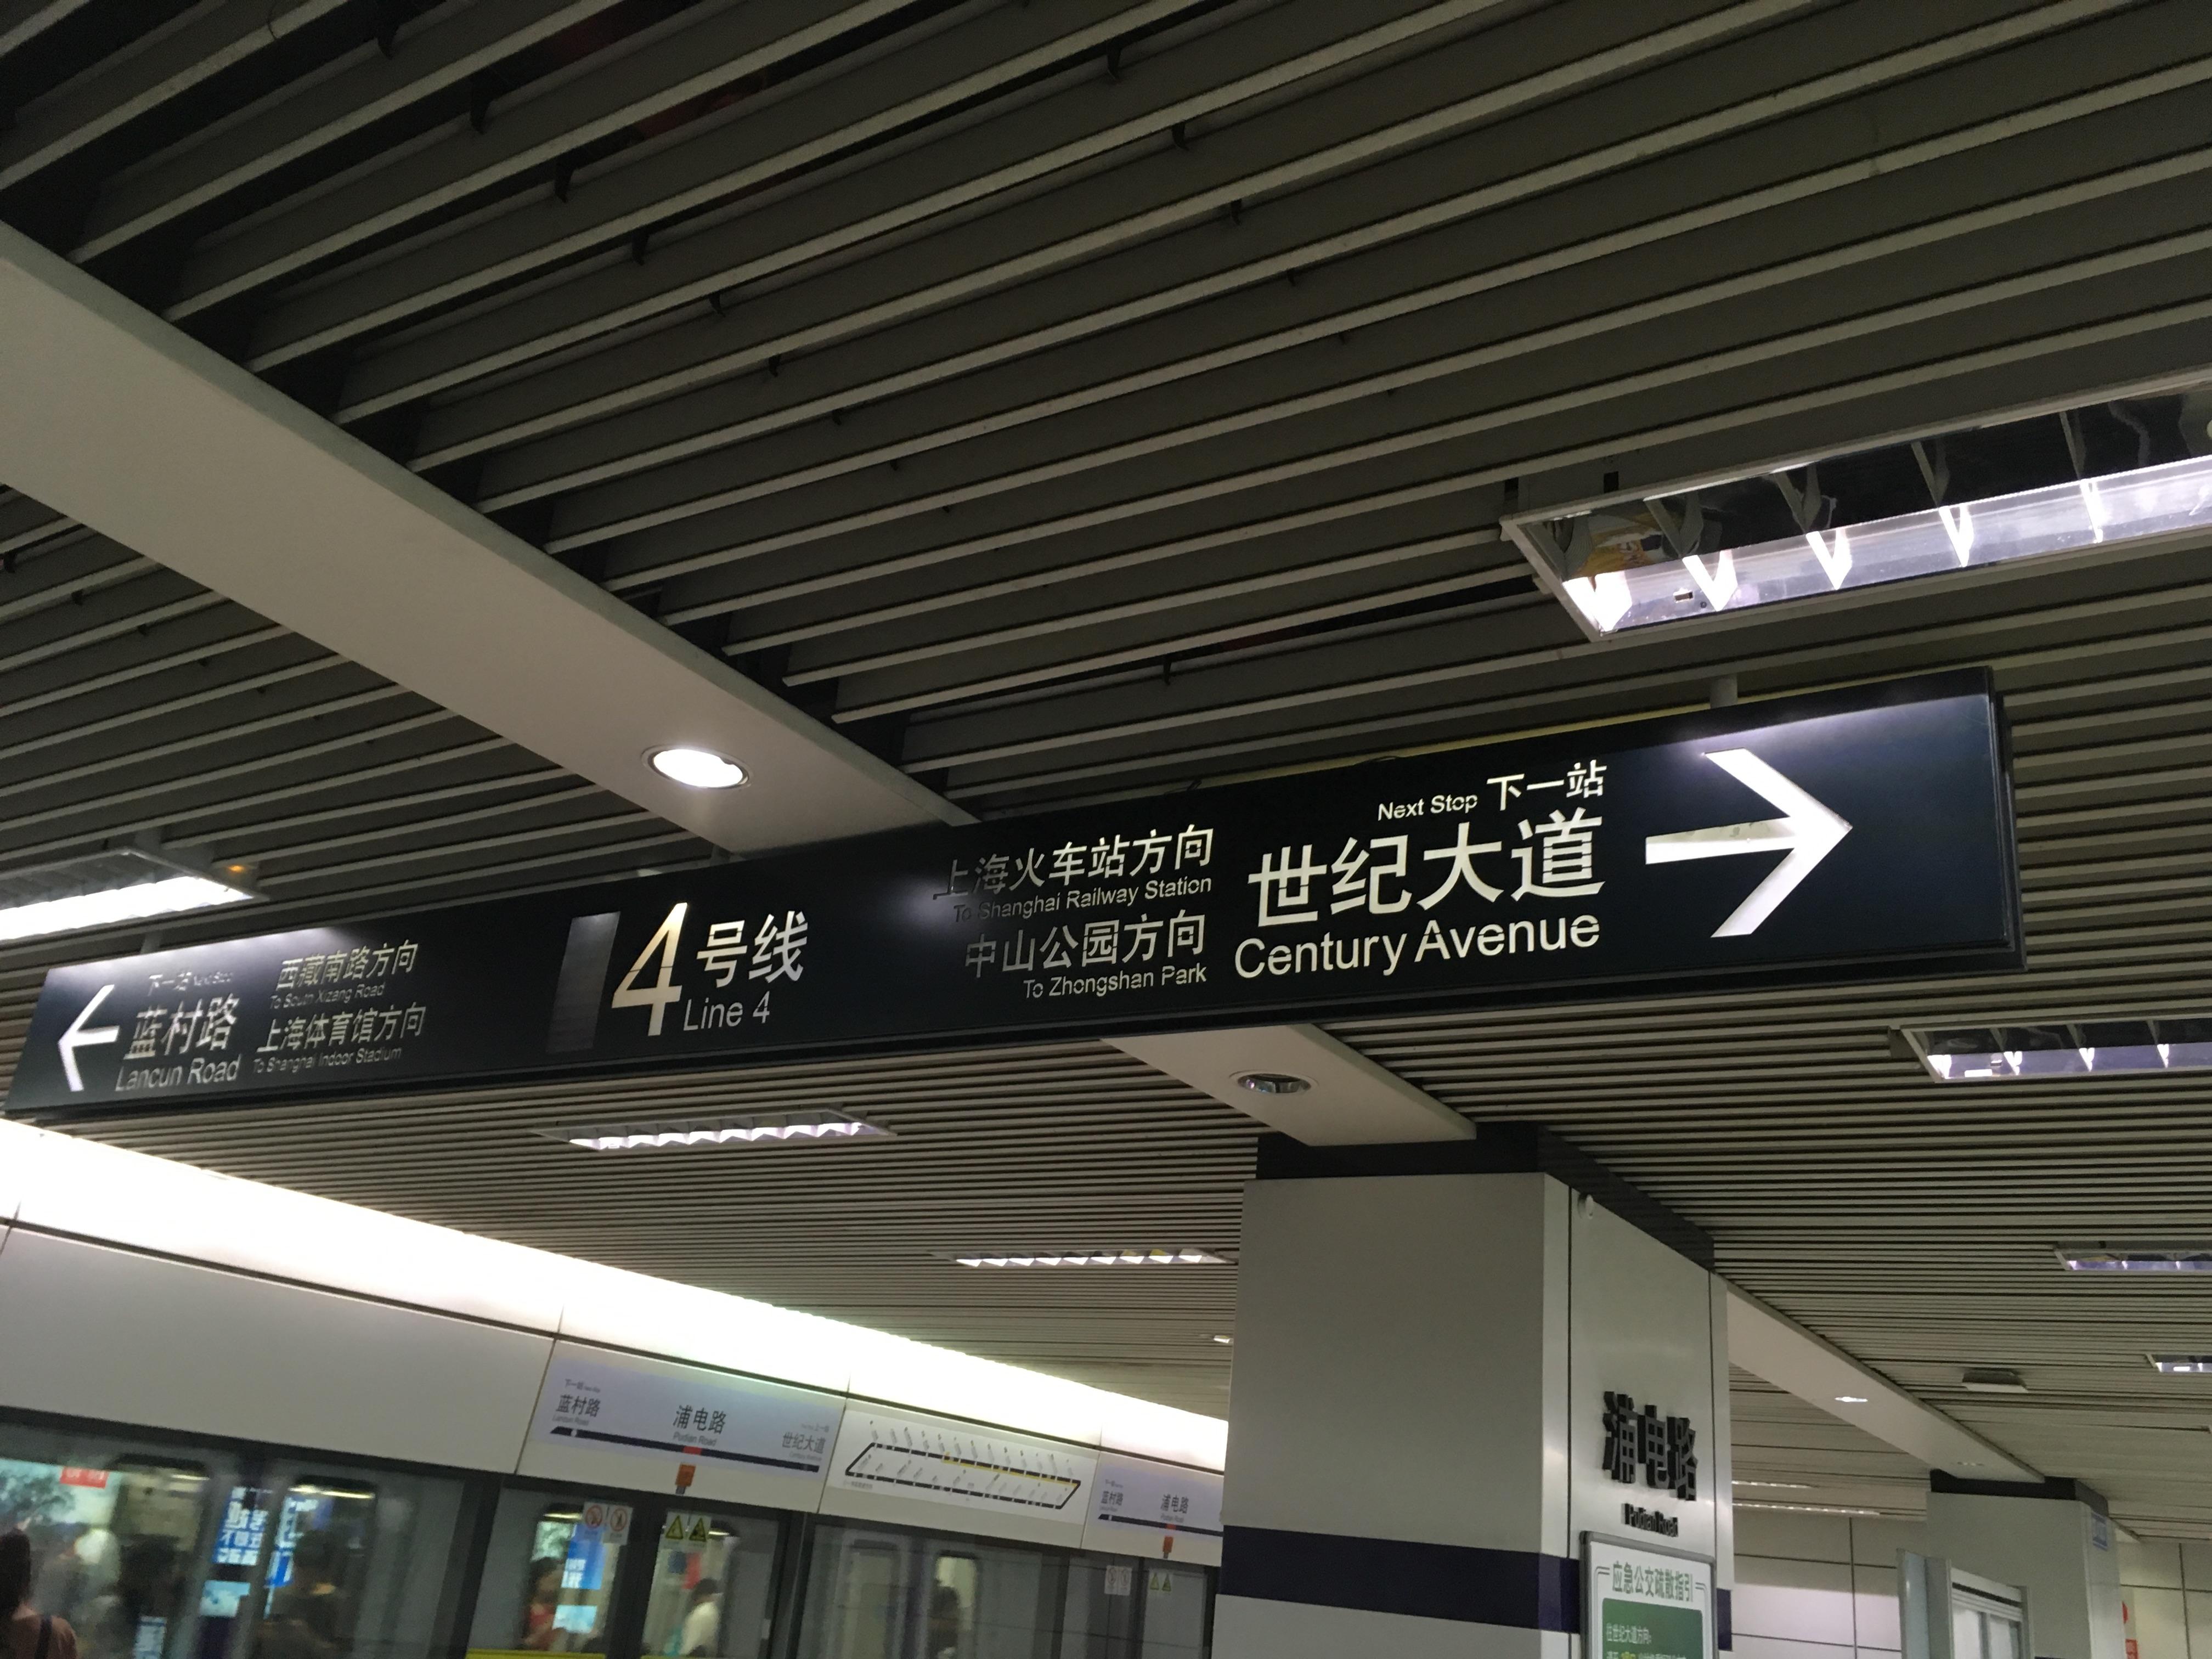 上海地铁站标识图片